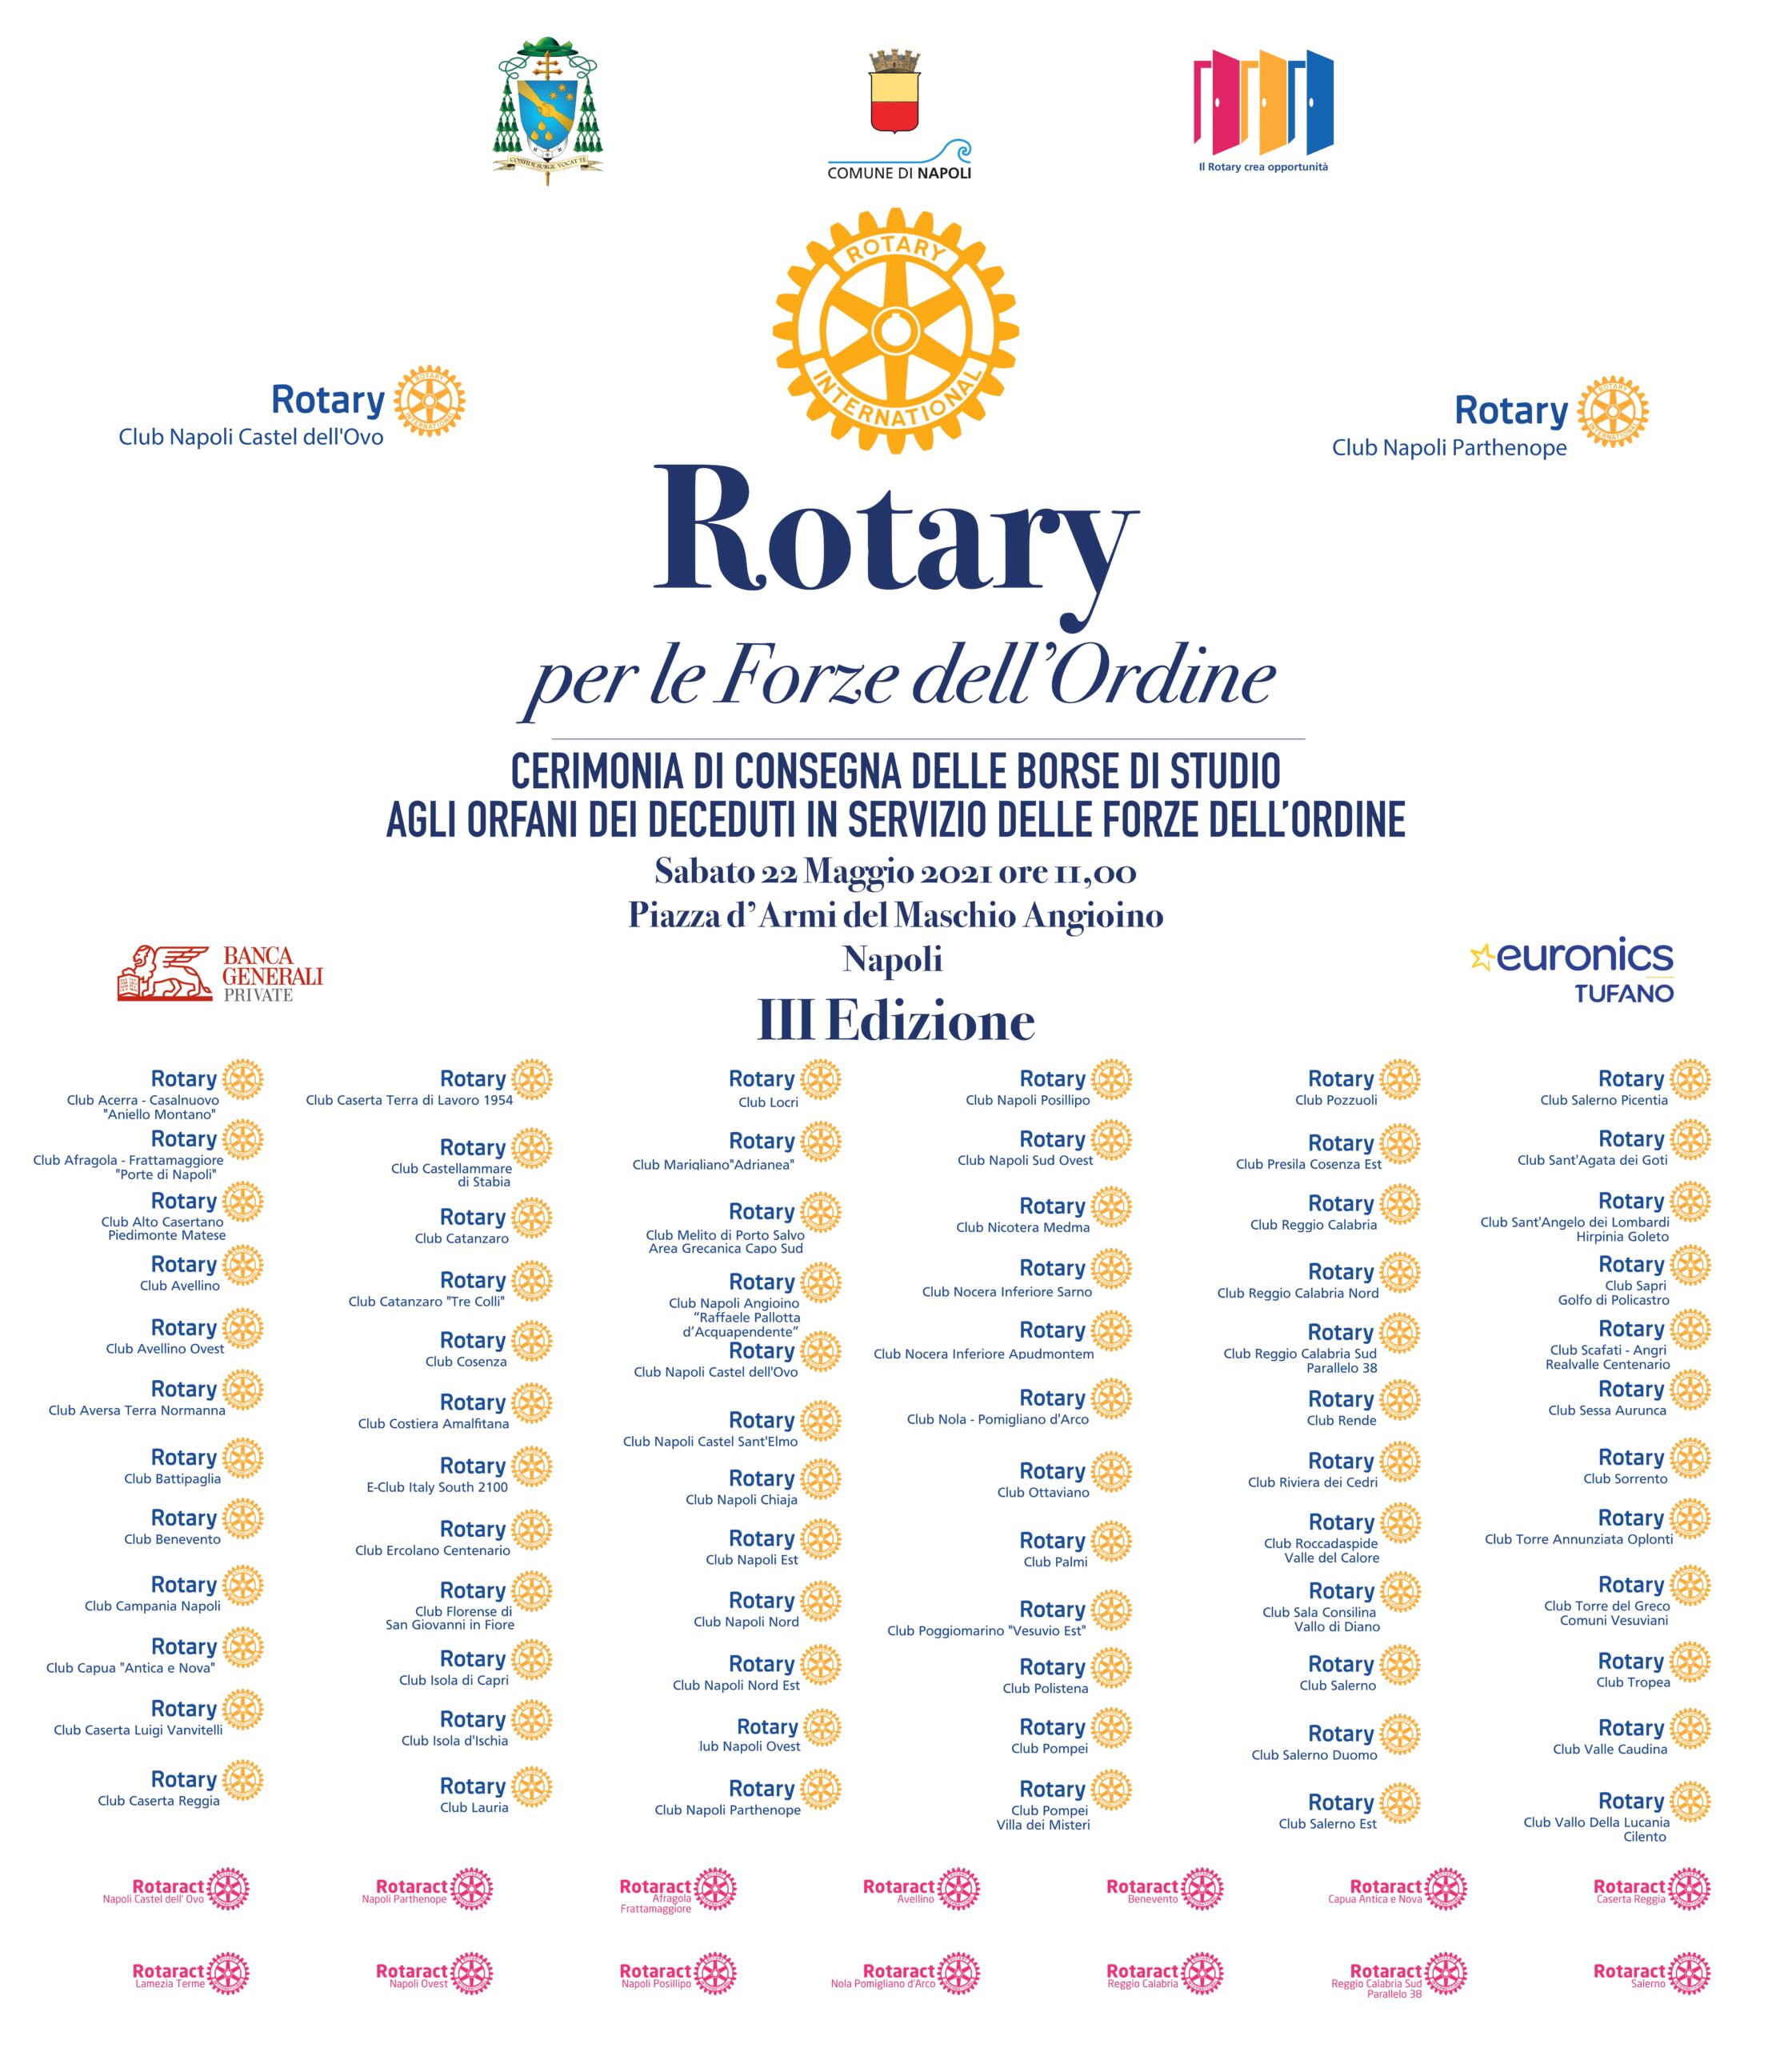 3^ edizione Rotary Forze dell’Ordine: sabato 22 maggio, ore 11.00